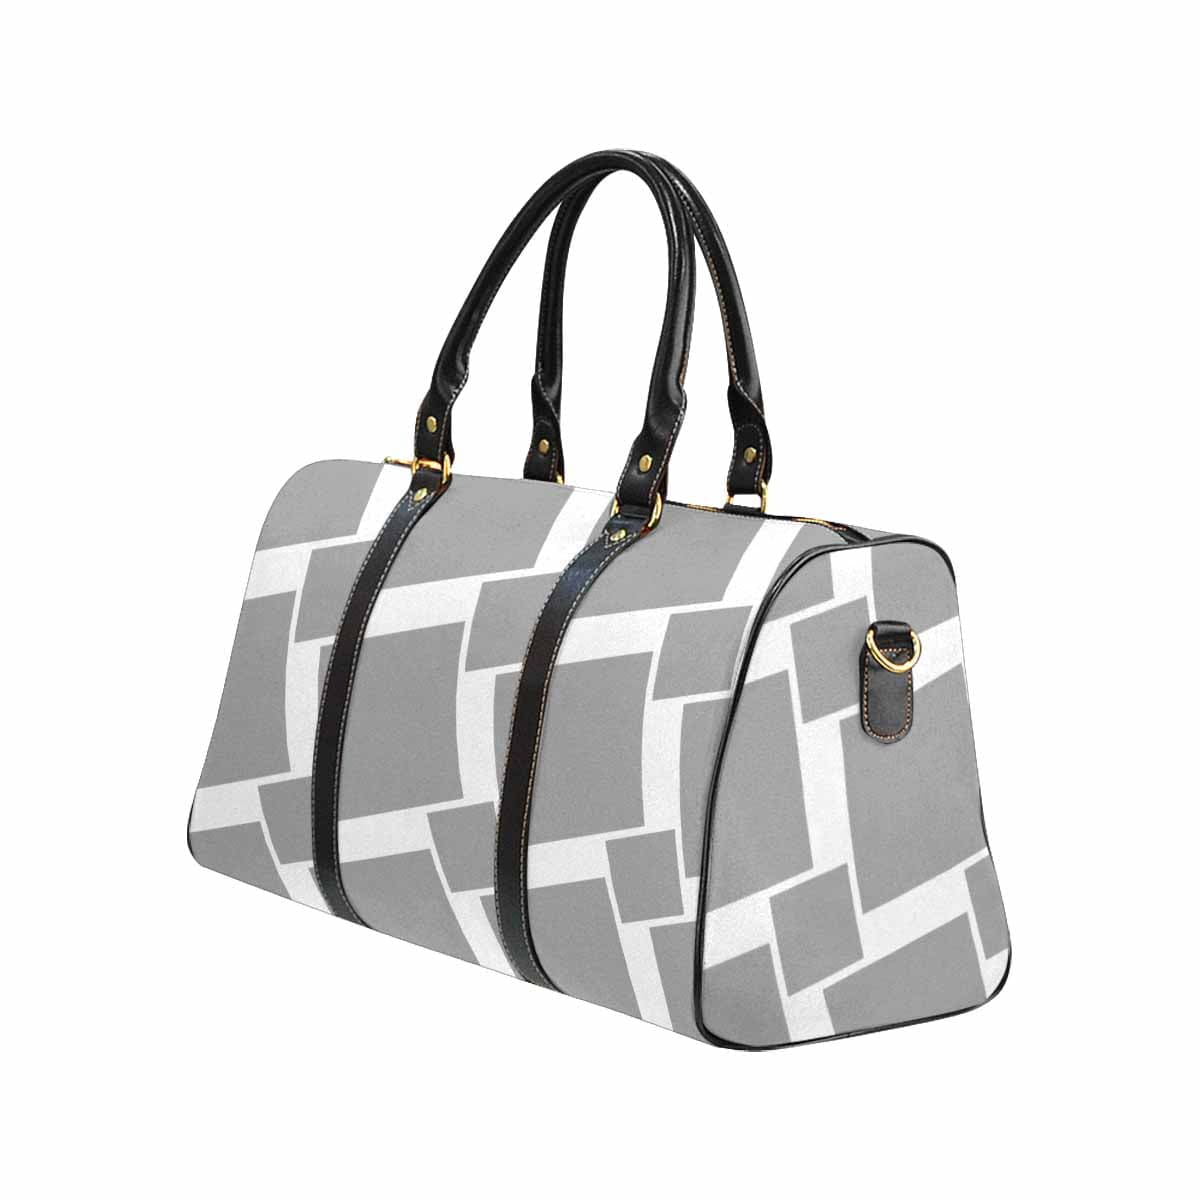 Travel Bag Adjustable Shoulder Strap Carry On Bag Grey - Bags | Travel Bags